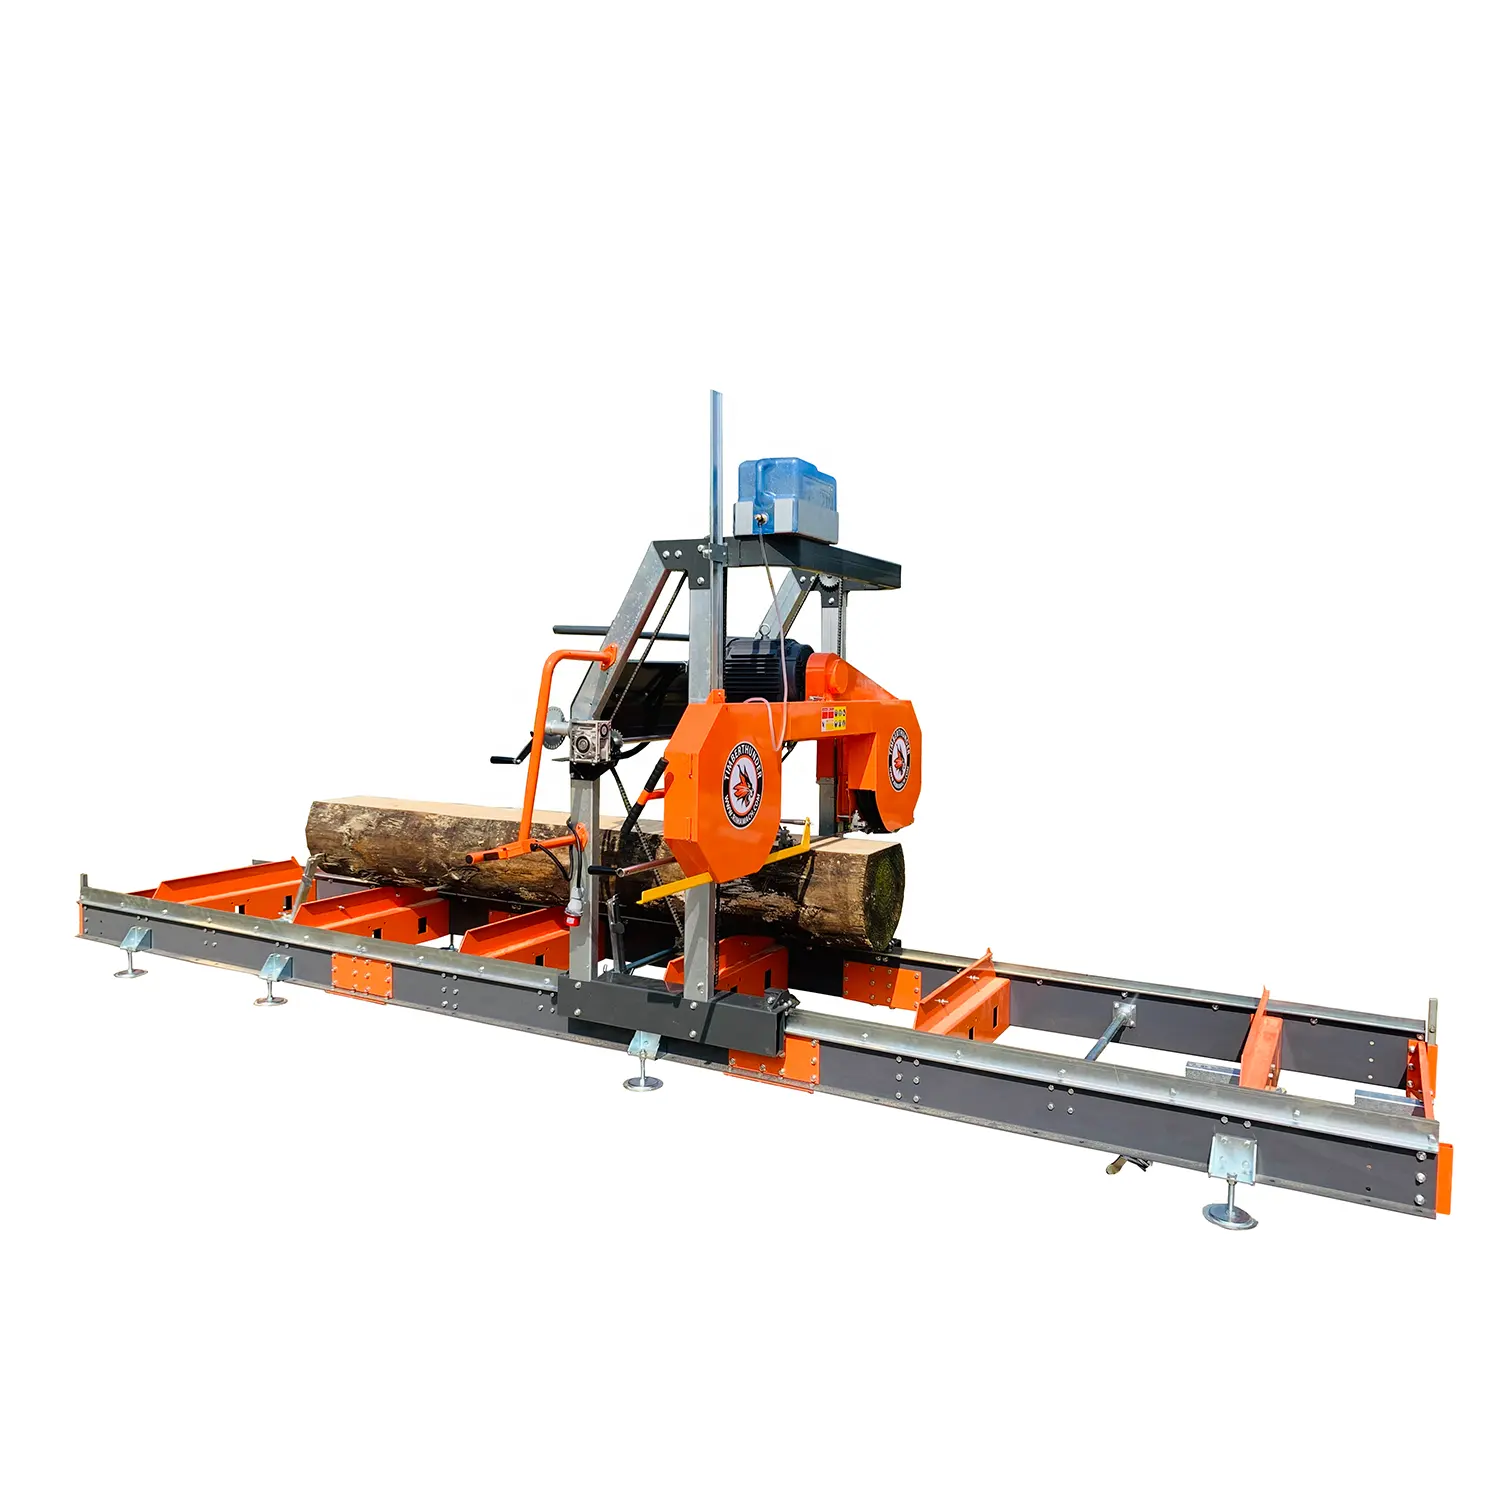 Yatay dizel Log taşınabilir testere değirmeni, parke için 36 inç bant testere, ahşap kesme testeresi makineleri 15kw / 27hp